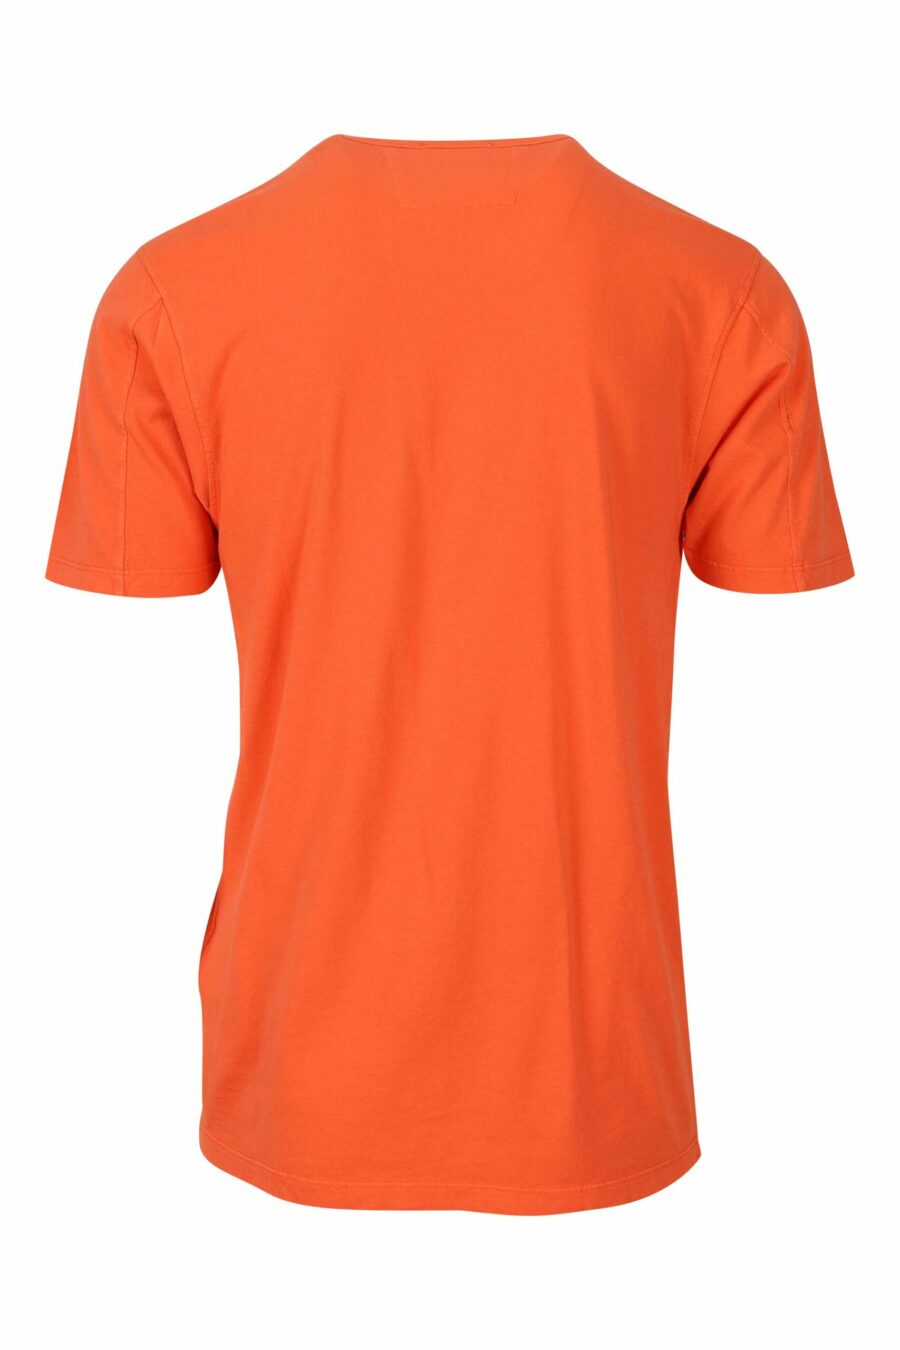 T-shirt orange avec minilogue centré - 7620943594928 1 1 à l'échelle